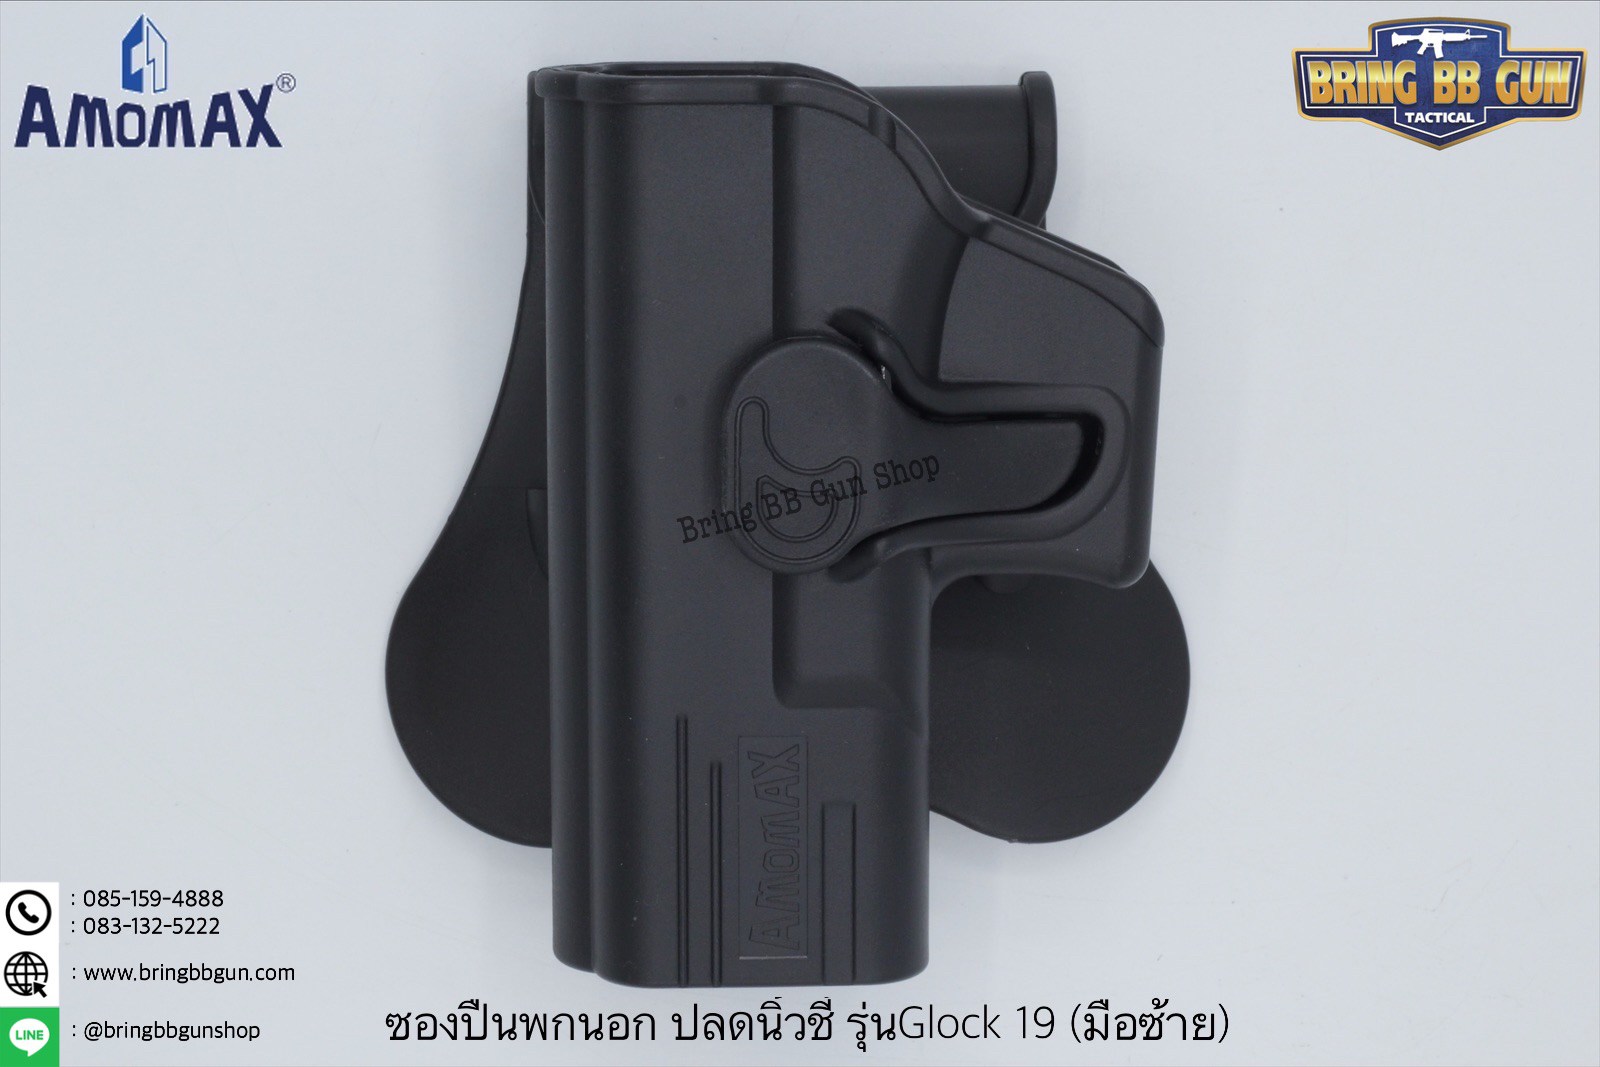 ซองพกนอกปลดนิ้วชี้ ยี่ห้อ Amomax รุ่น Glock 19 มือซ้าย สำหรับรุ่น : Glock 19/23/32 คุณสมบัติ : วัสดุผลิตจาก โพลิเมอร์เกรดกองทัพ น้ำหนักเบา แข็งแรงทนทาน ซองพกนอกปลดนิ้วชี้ ซองสามารถปรับหมุนได้360องศา ตัวซองมาพร้อมเพลตเหน็บเอว ที่ออกแบบมาให้ด้านในมียางหุ้มท